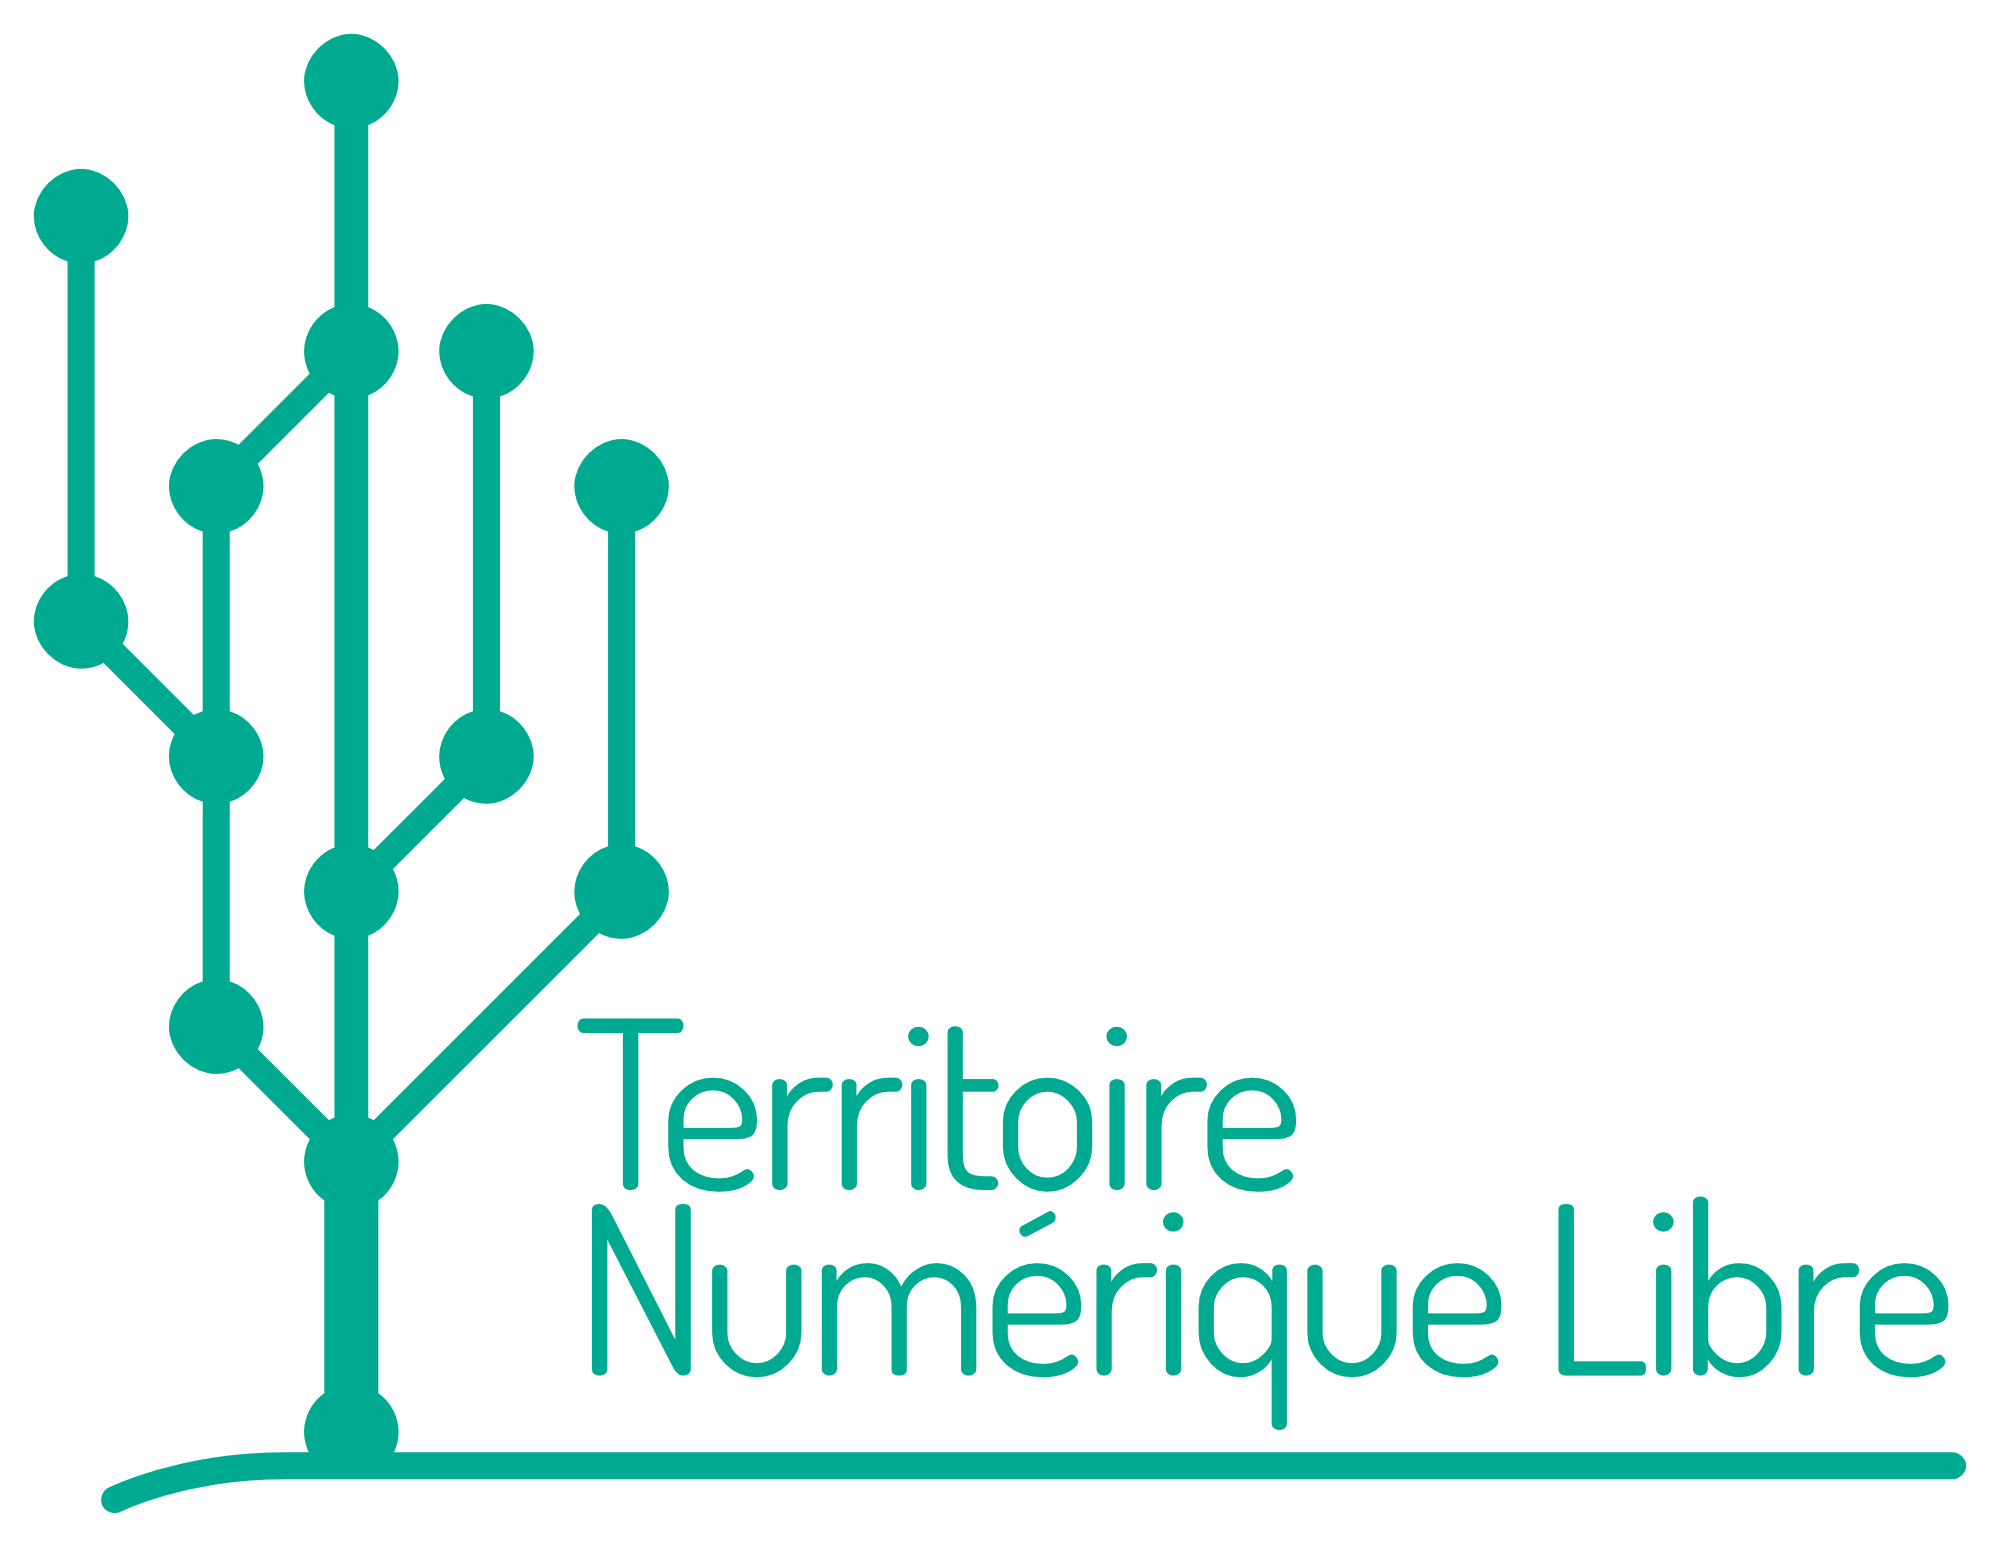 «Territoire Numérique Libre»   Albi labellisée niveau 4